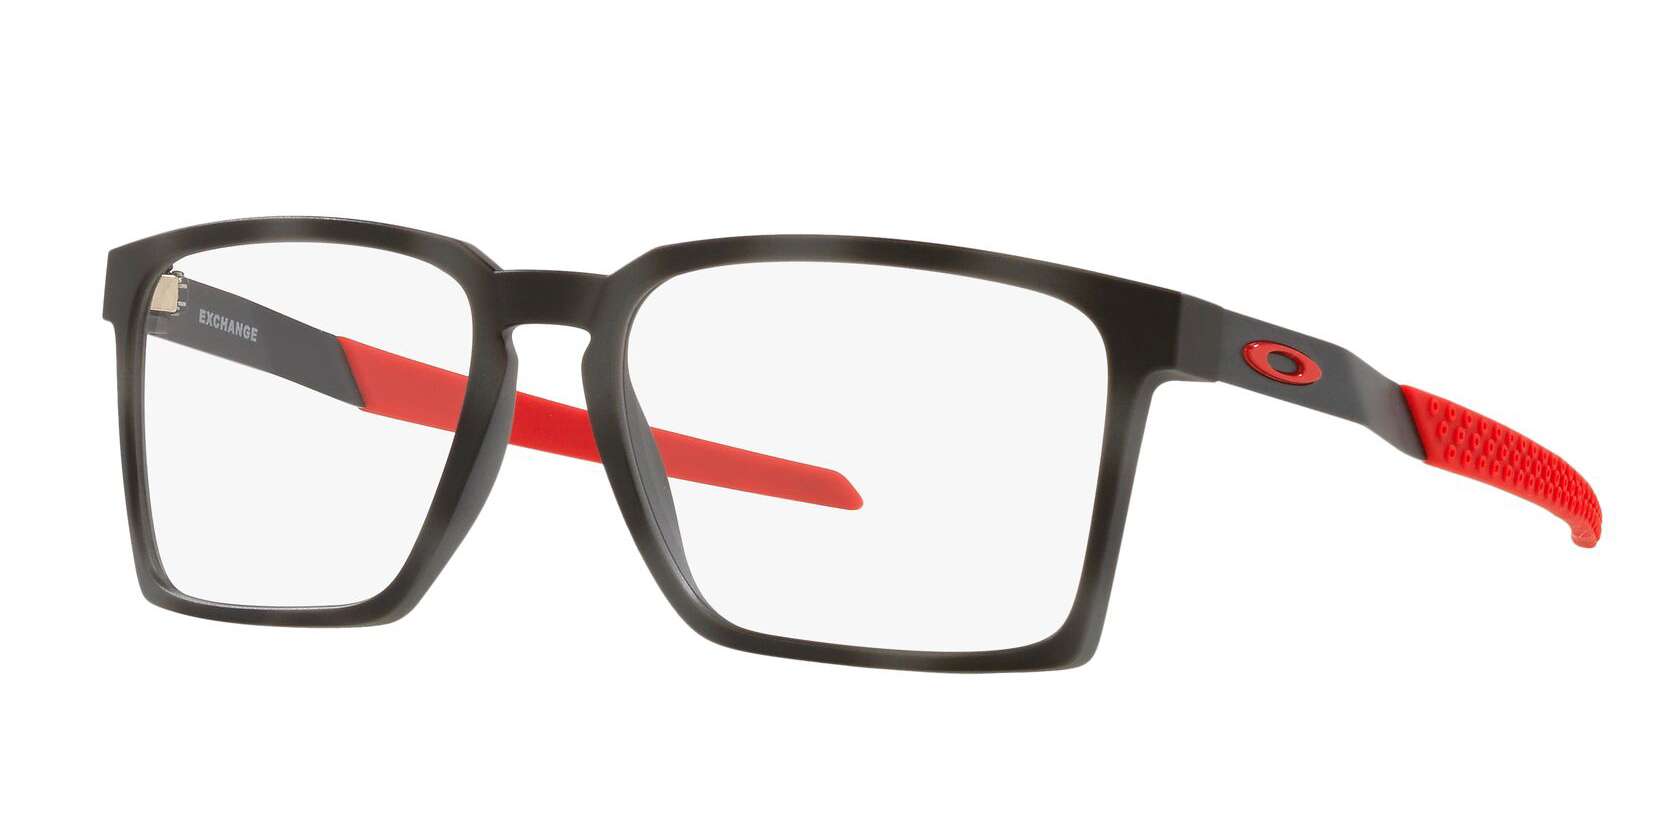 Oakley briller - Exchange fra Oakley - Svart - Plast - wayfarer - large